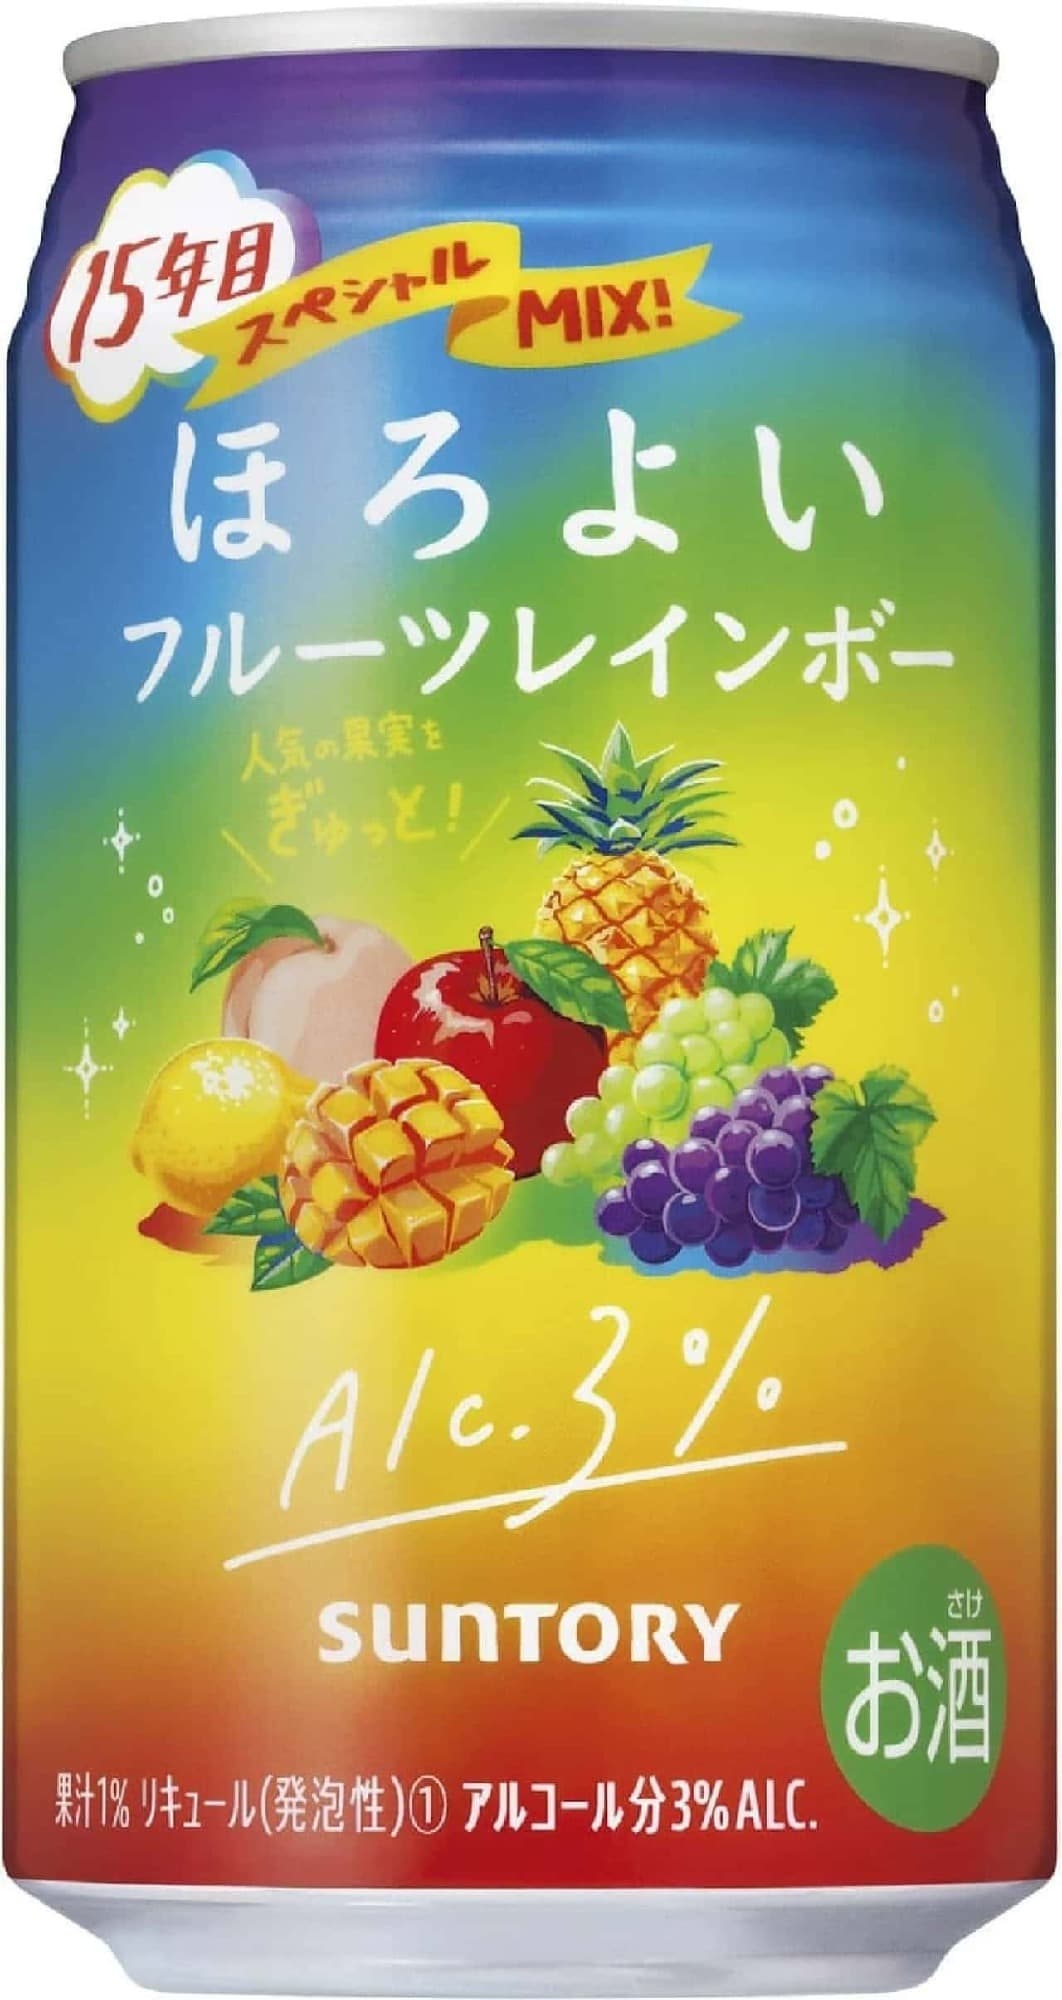 Suntory "Horoiyoi (Fruit Rainbow)